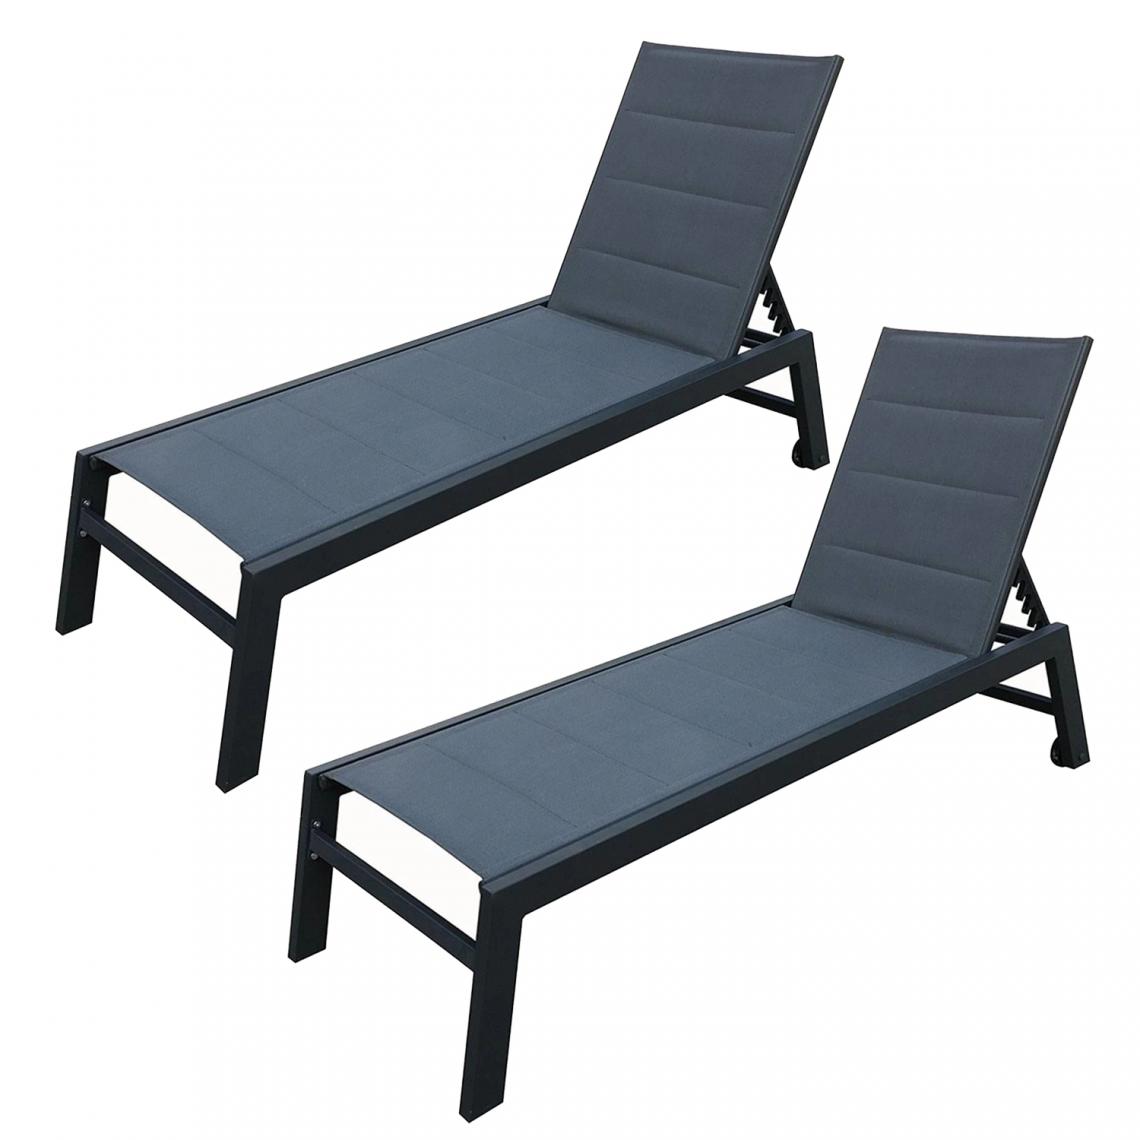 Beneffito - BAISAO - Bain de Soleil Droit Textilène Aluminium - GRIS/NOIR - X2 - Transats, chaises longues